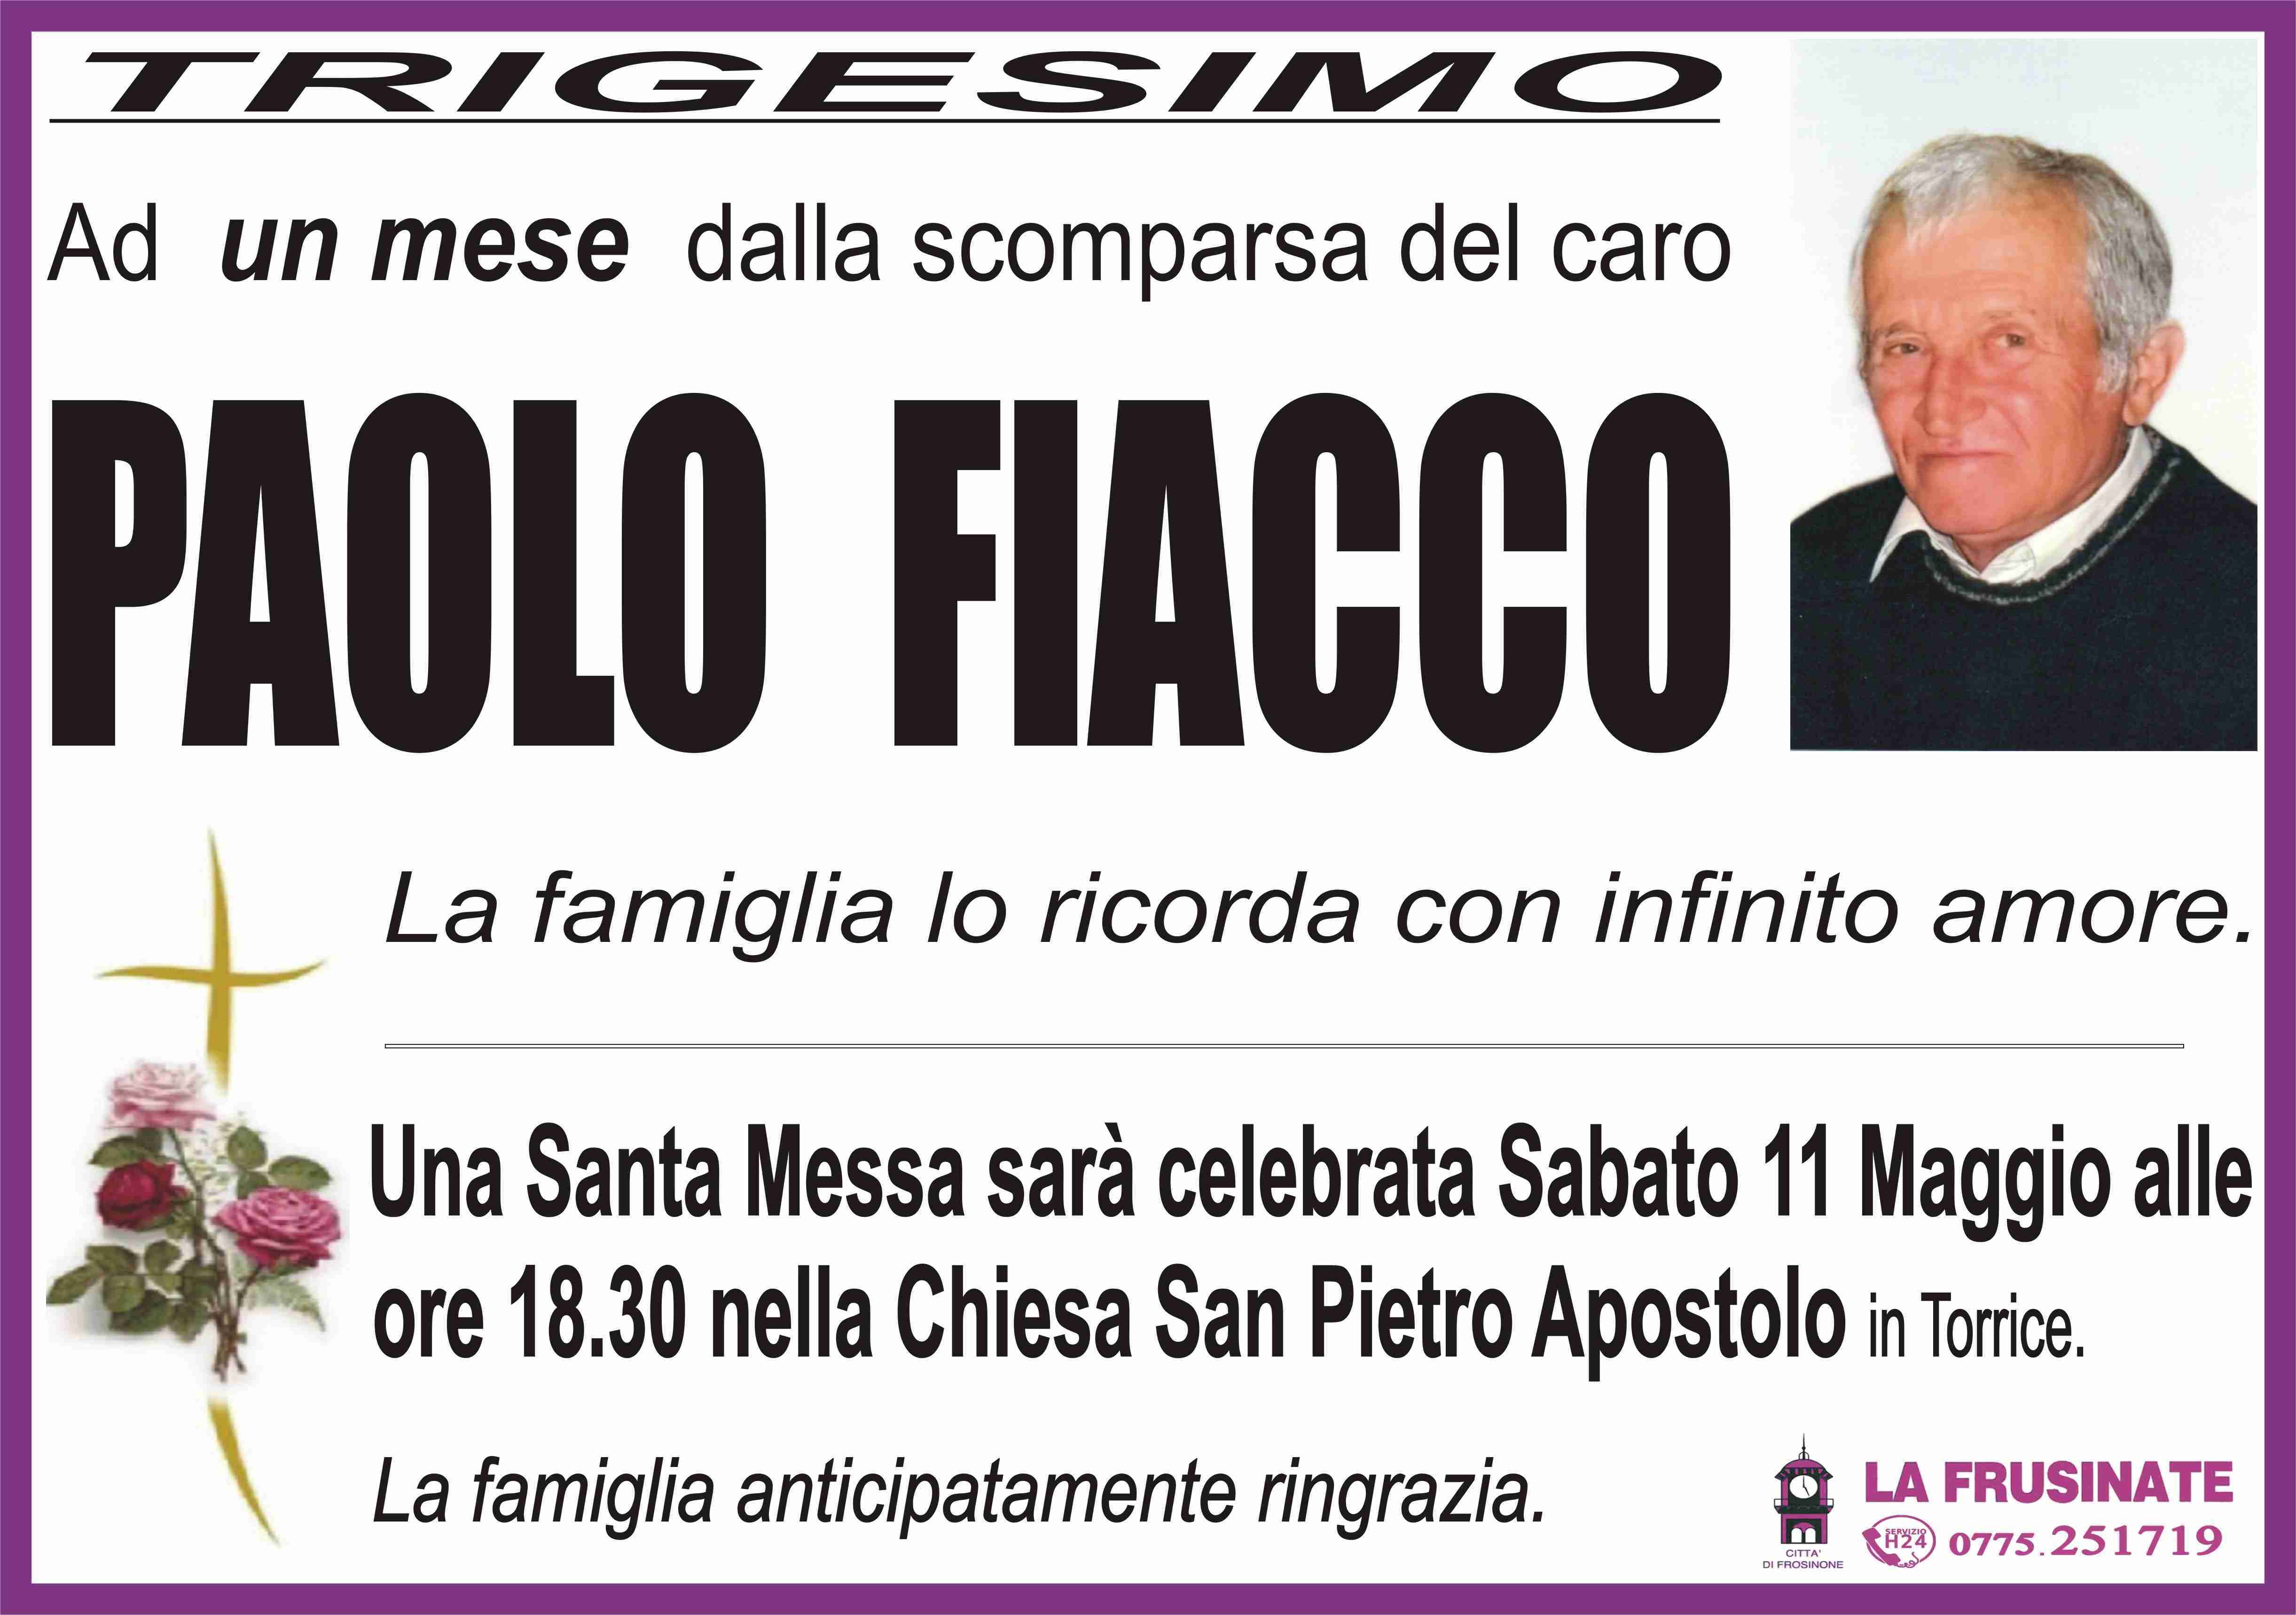 Paolo Fiacco